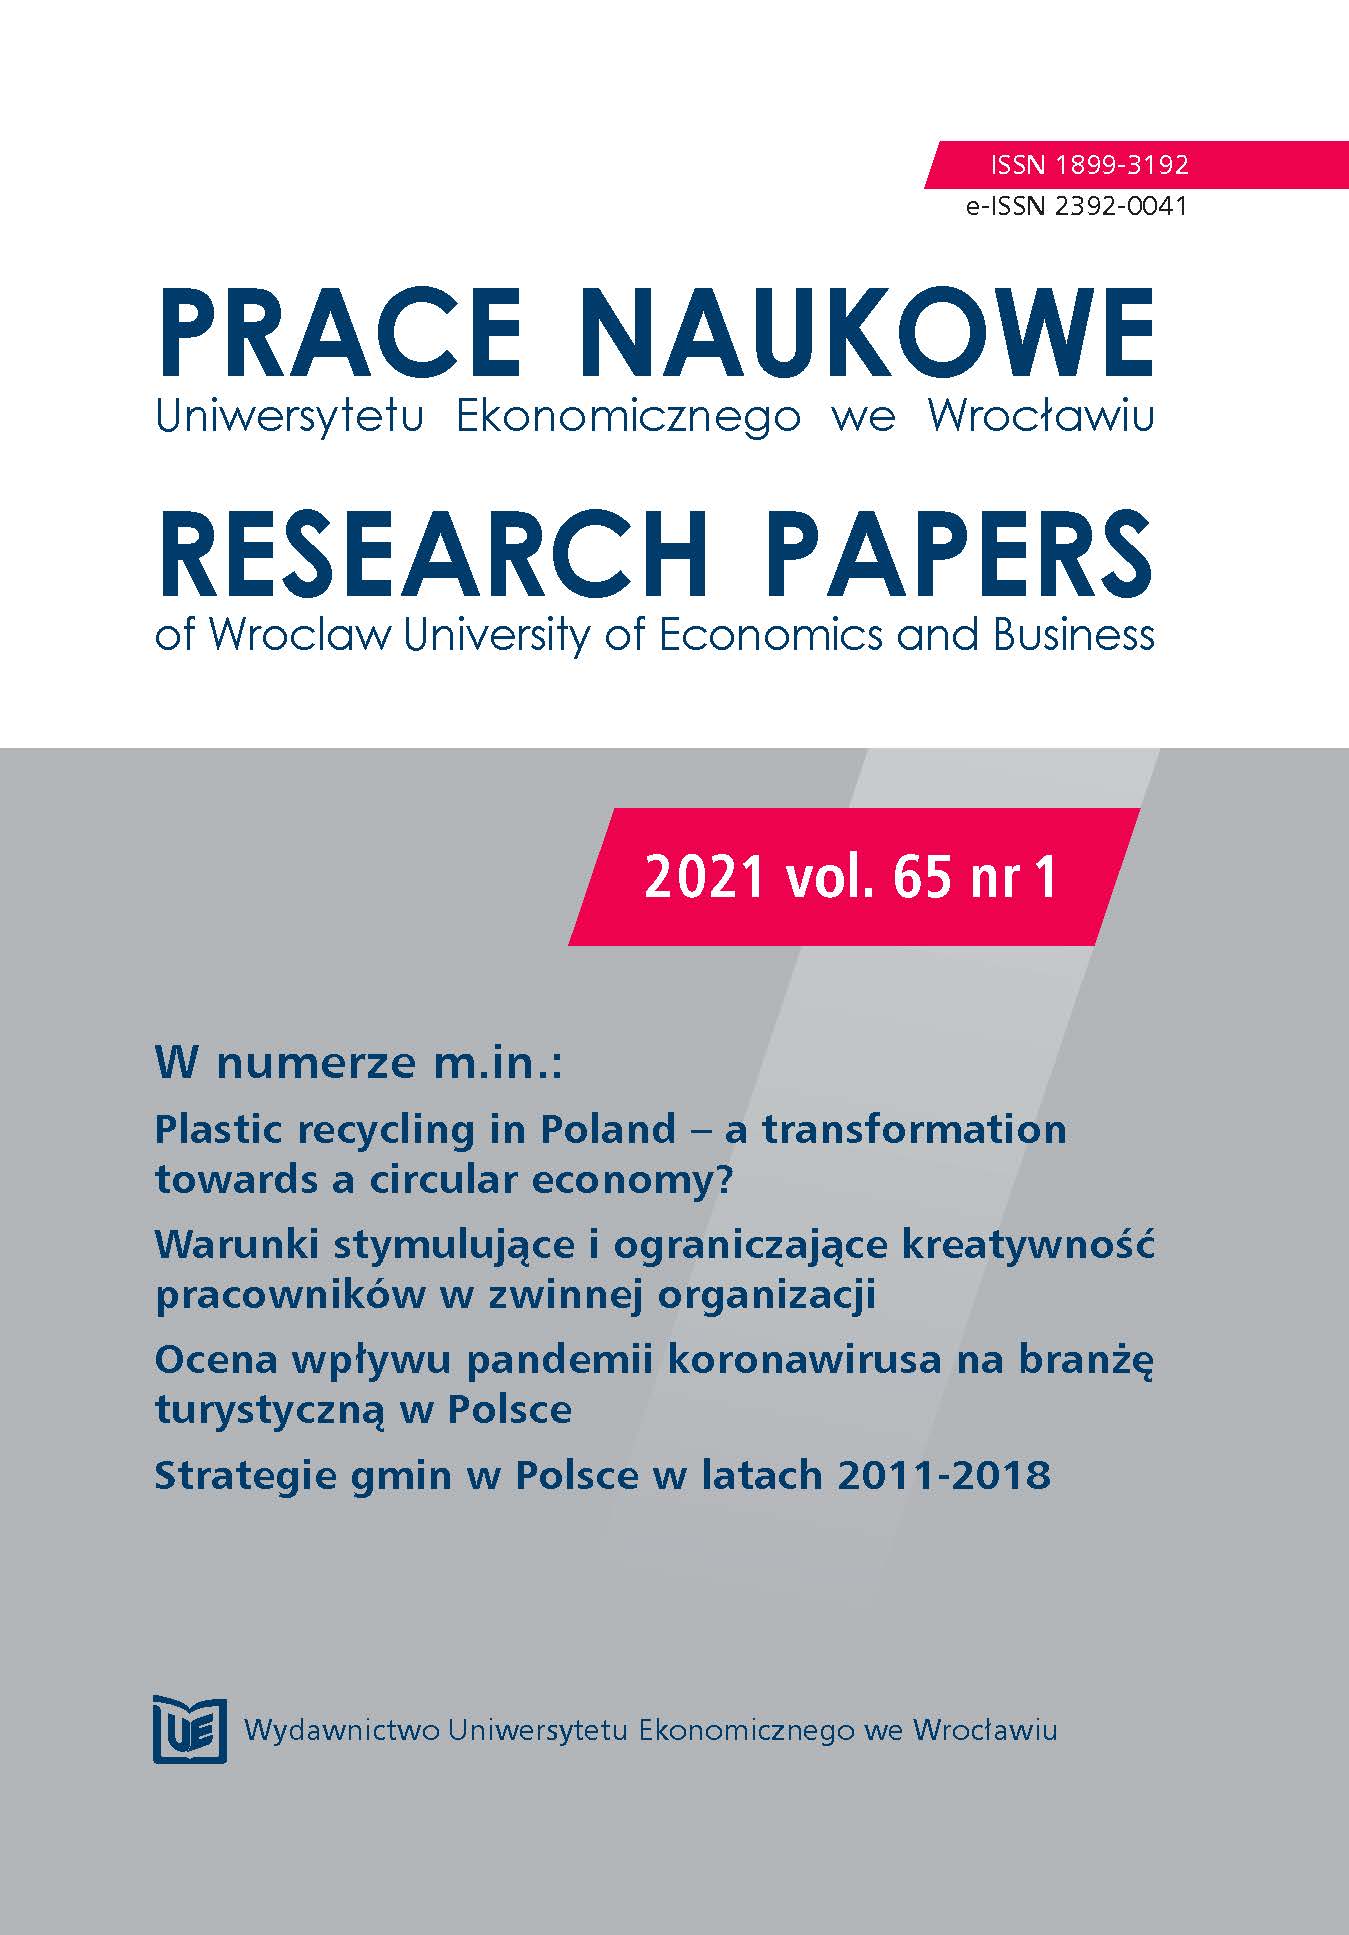 Ocena wpływu kondycji finansowej na komponenty zrównoważonego rozwoju przedsiębiorstw transportowych w Polsce w latach 2008-2019